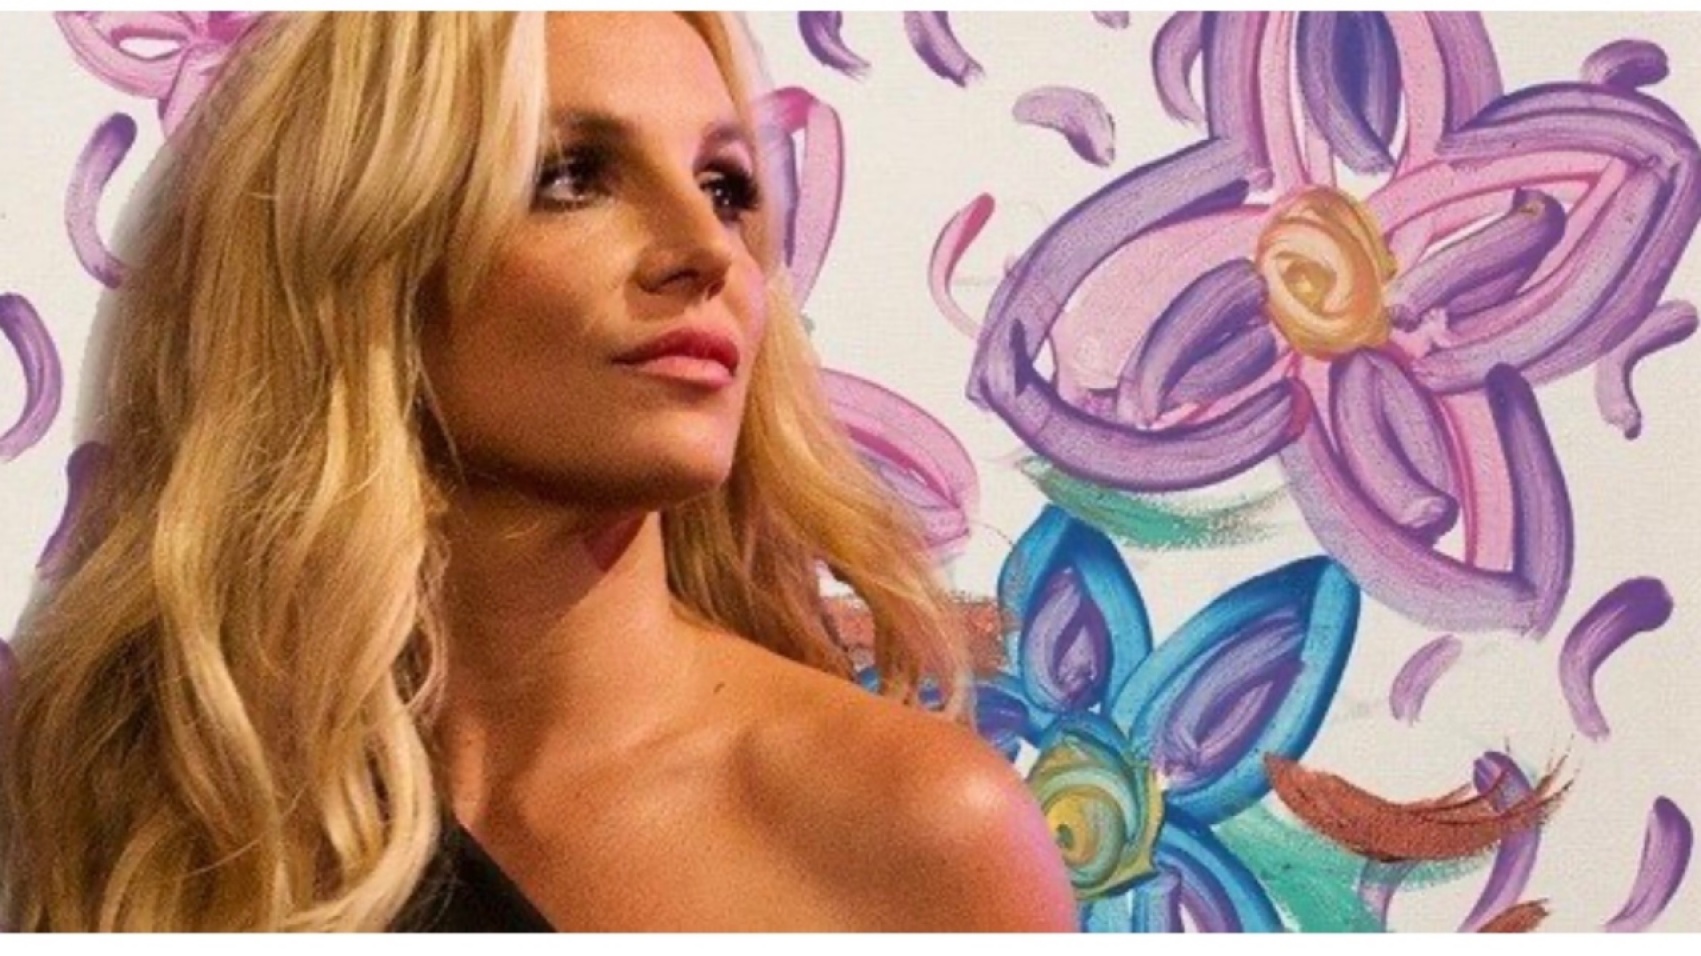 «Упс, ай дид ит эгейн»: сколько стоит рисунок Бритни Спирс